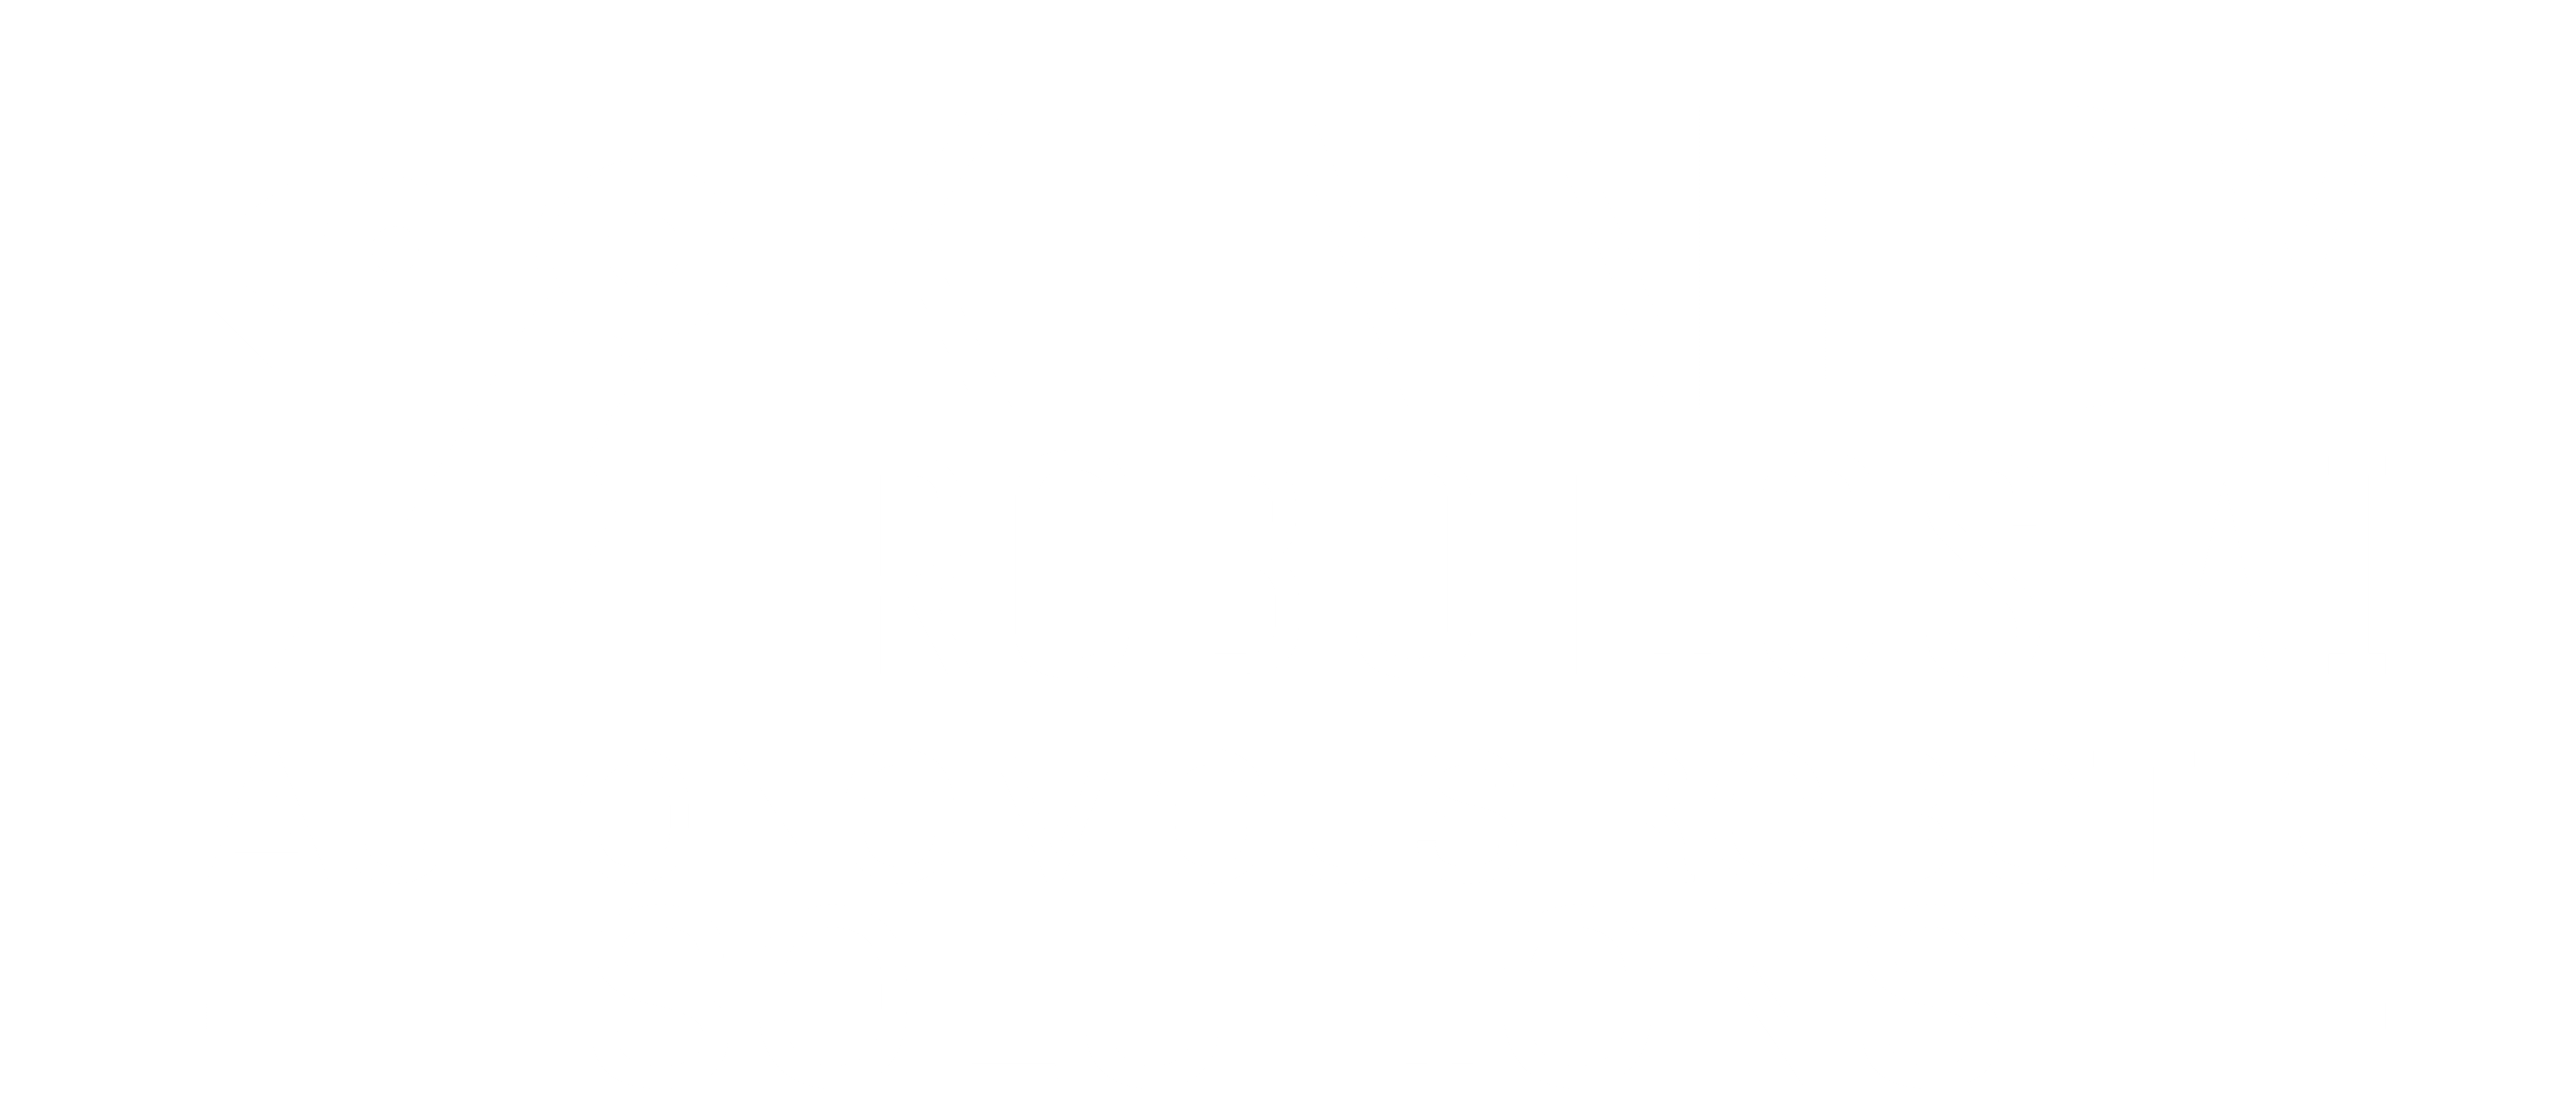 KENNEDY ROBOTICS AI, LLC
AUTONOMOUS ROBOTIC SOLUTIONS

AMR'S/ AI HUMANOID ROBOTS/ SORTING COBOTS/ASSEMBLY ROBOTS/ DRONES/ ROBOTIC SEWING/ CLEANING ROBOTS